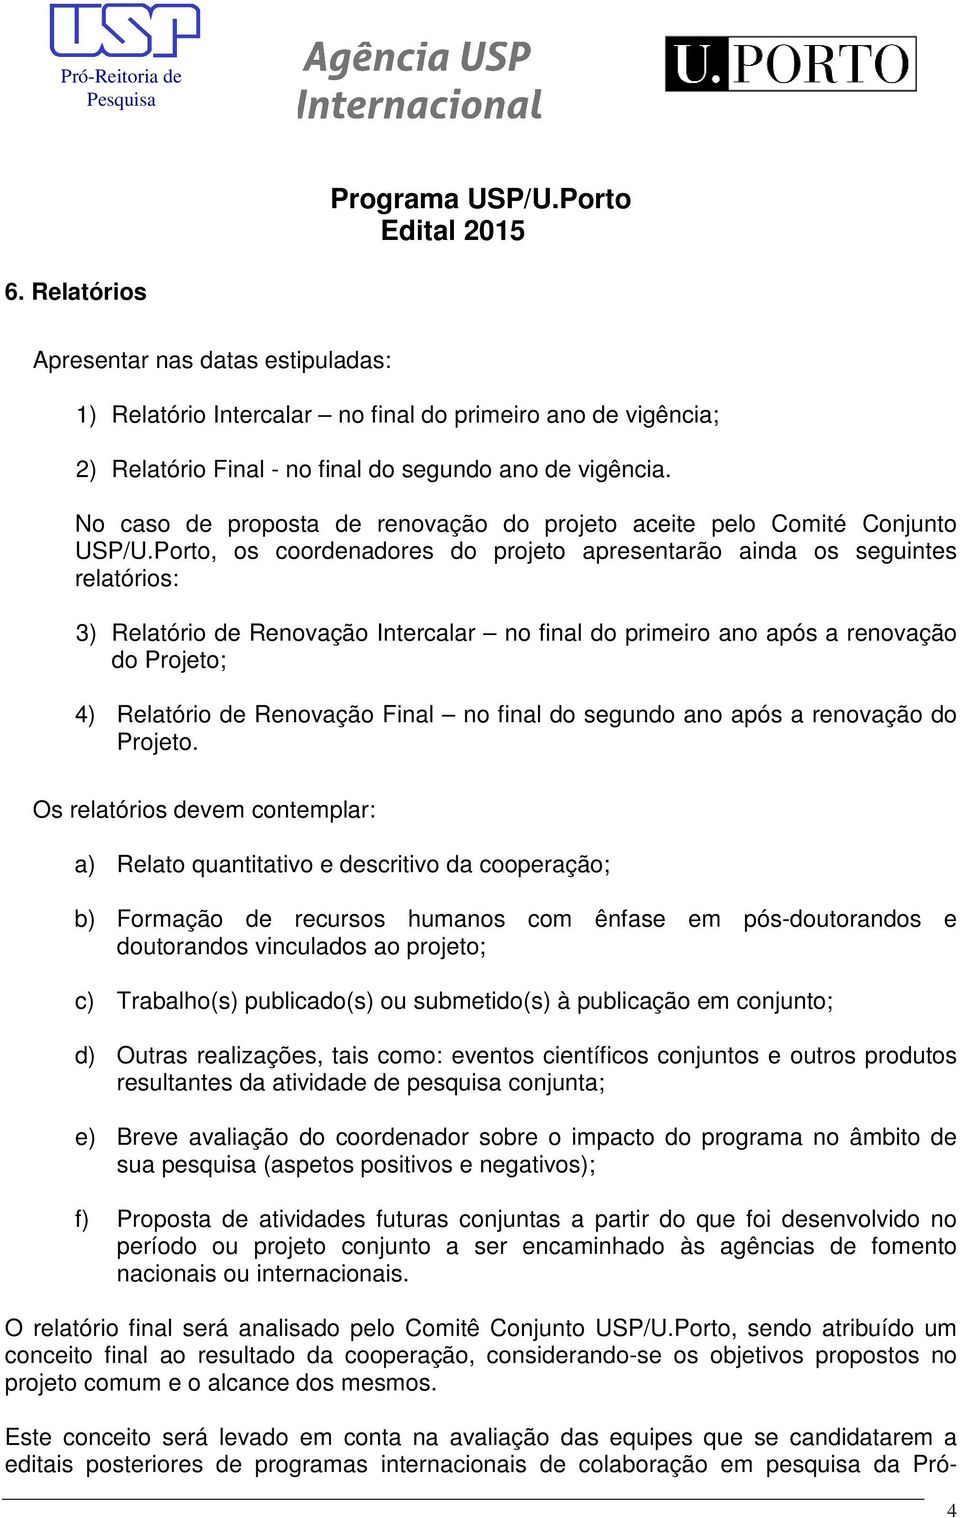 Porto, os coordenadores do projeto apresentarão ainda os seguintes relatórios: 3) Relatório de Renovação Intercalar no final do primeiro ano após a renovação do Projeto; 4) Relatório de Renovação